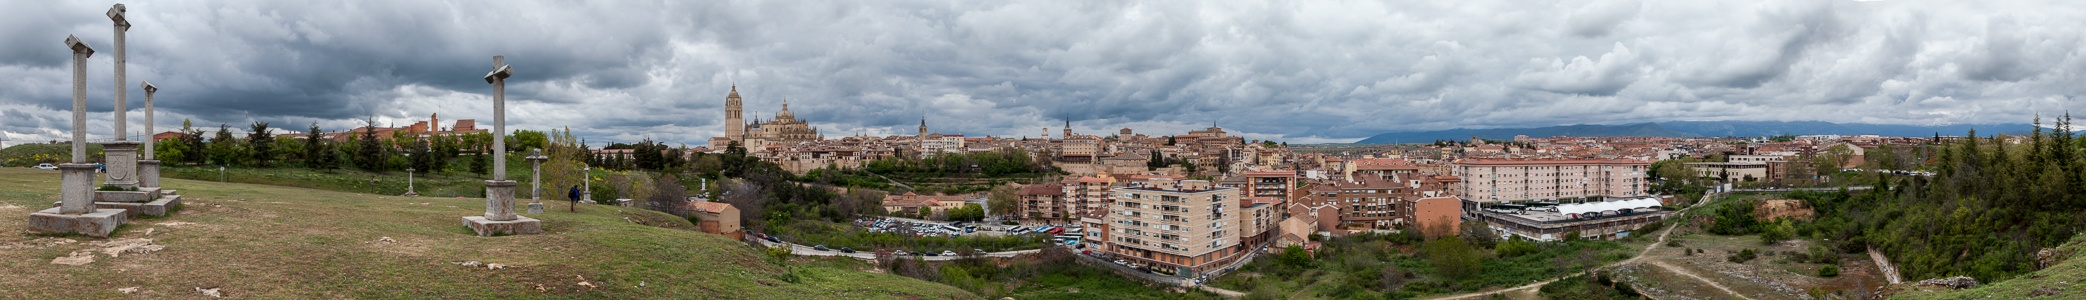 Altos de la Piedad, Centro Histórico mit Catedral de Santa María de Segovia, Römisches Aquädukt Segovia